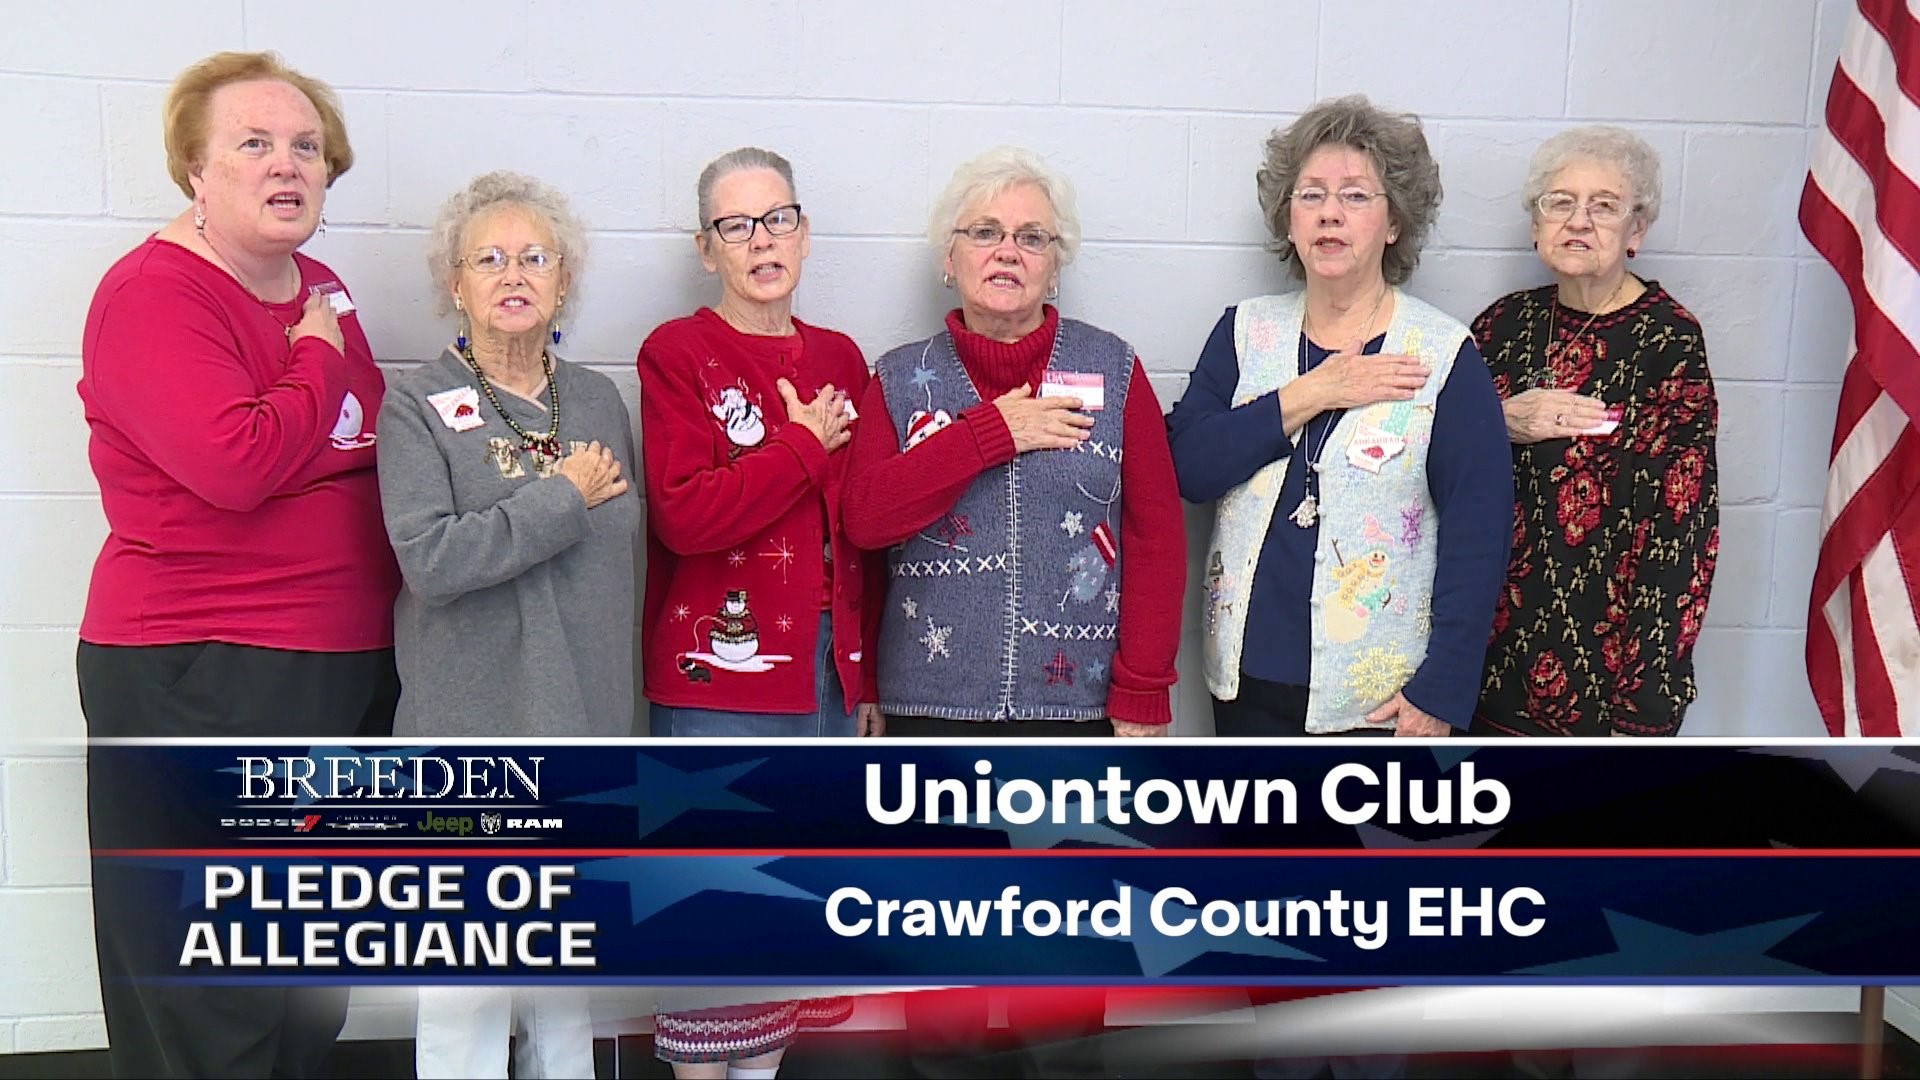 Uniontown Club Crawford County EHC